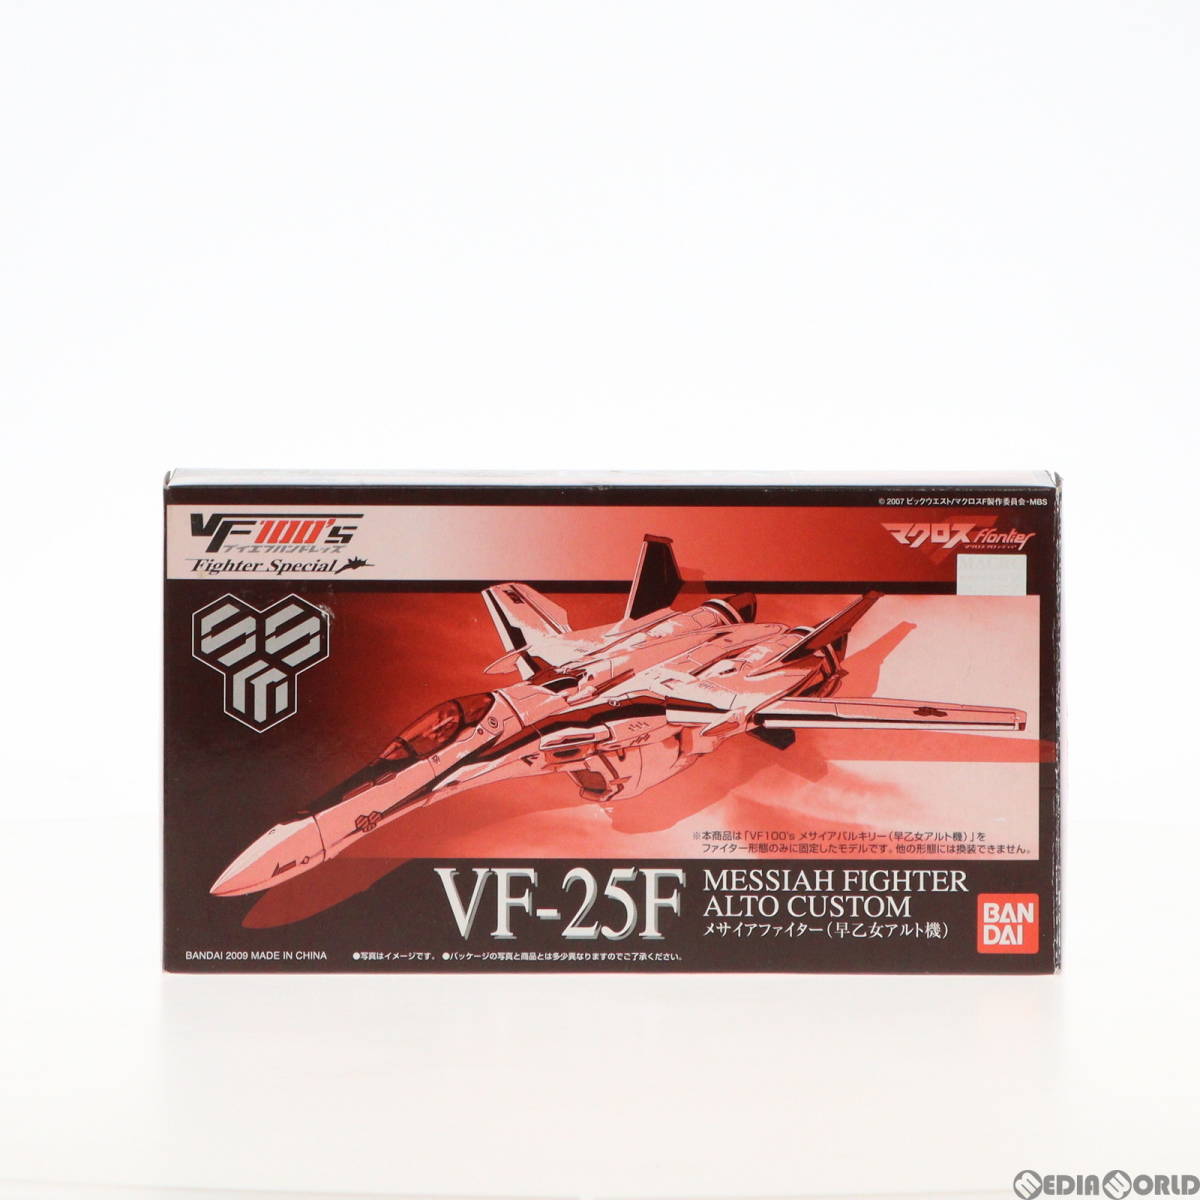 【中古】[FIG]キャラホビ2009限定 VF100's FighterSpecial VF-25F メサイアファイター(早乙女アルト機) マクロスF(フロンティア) 1/100 完